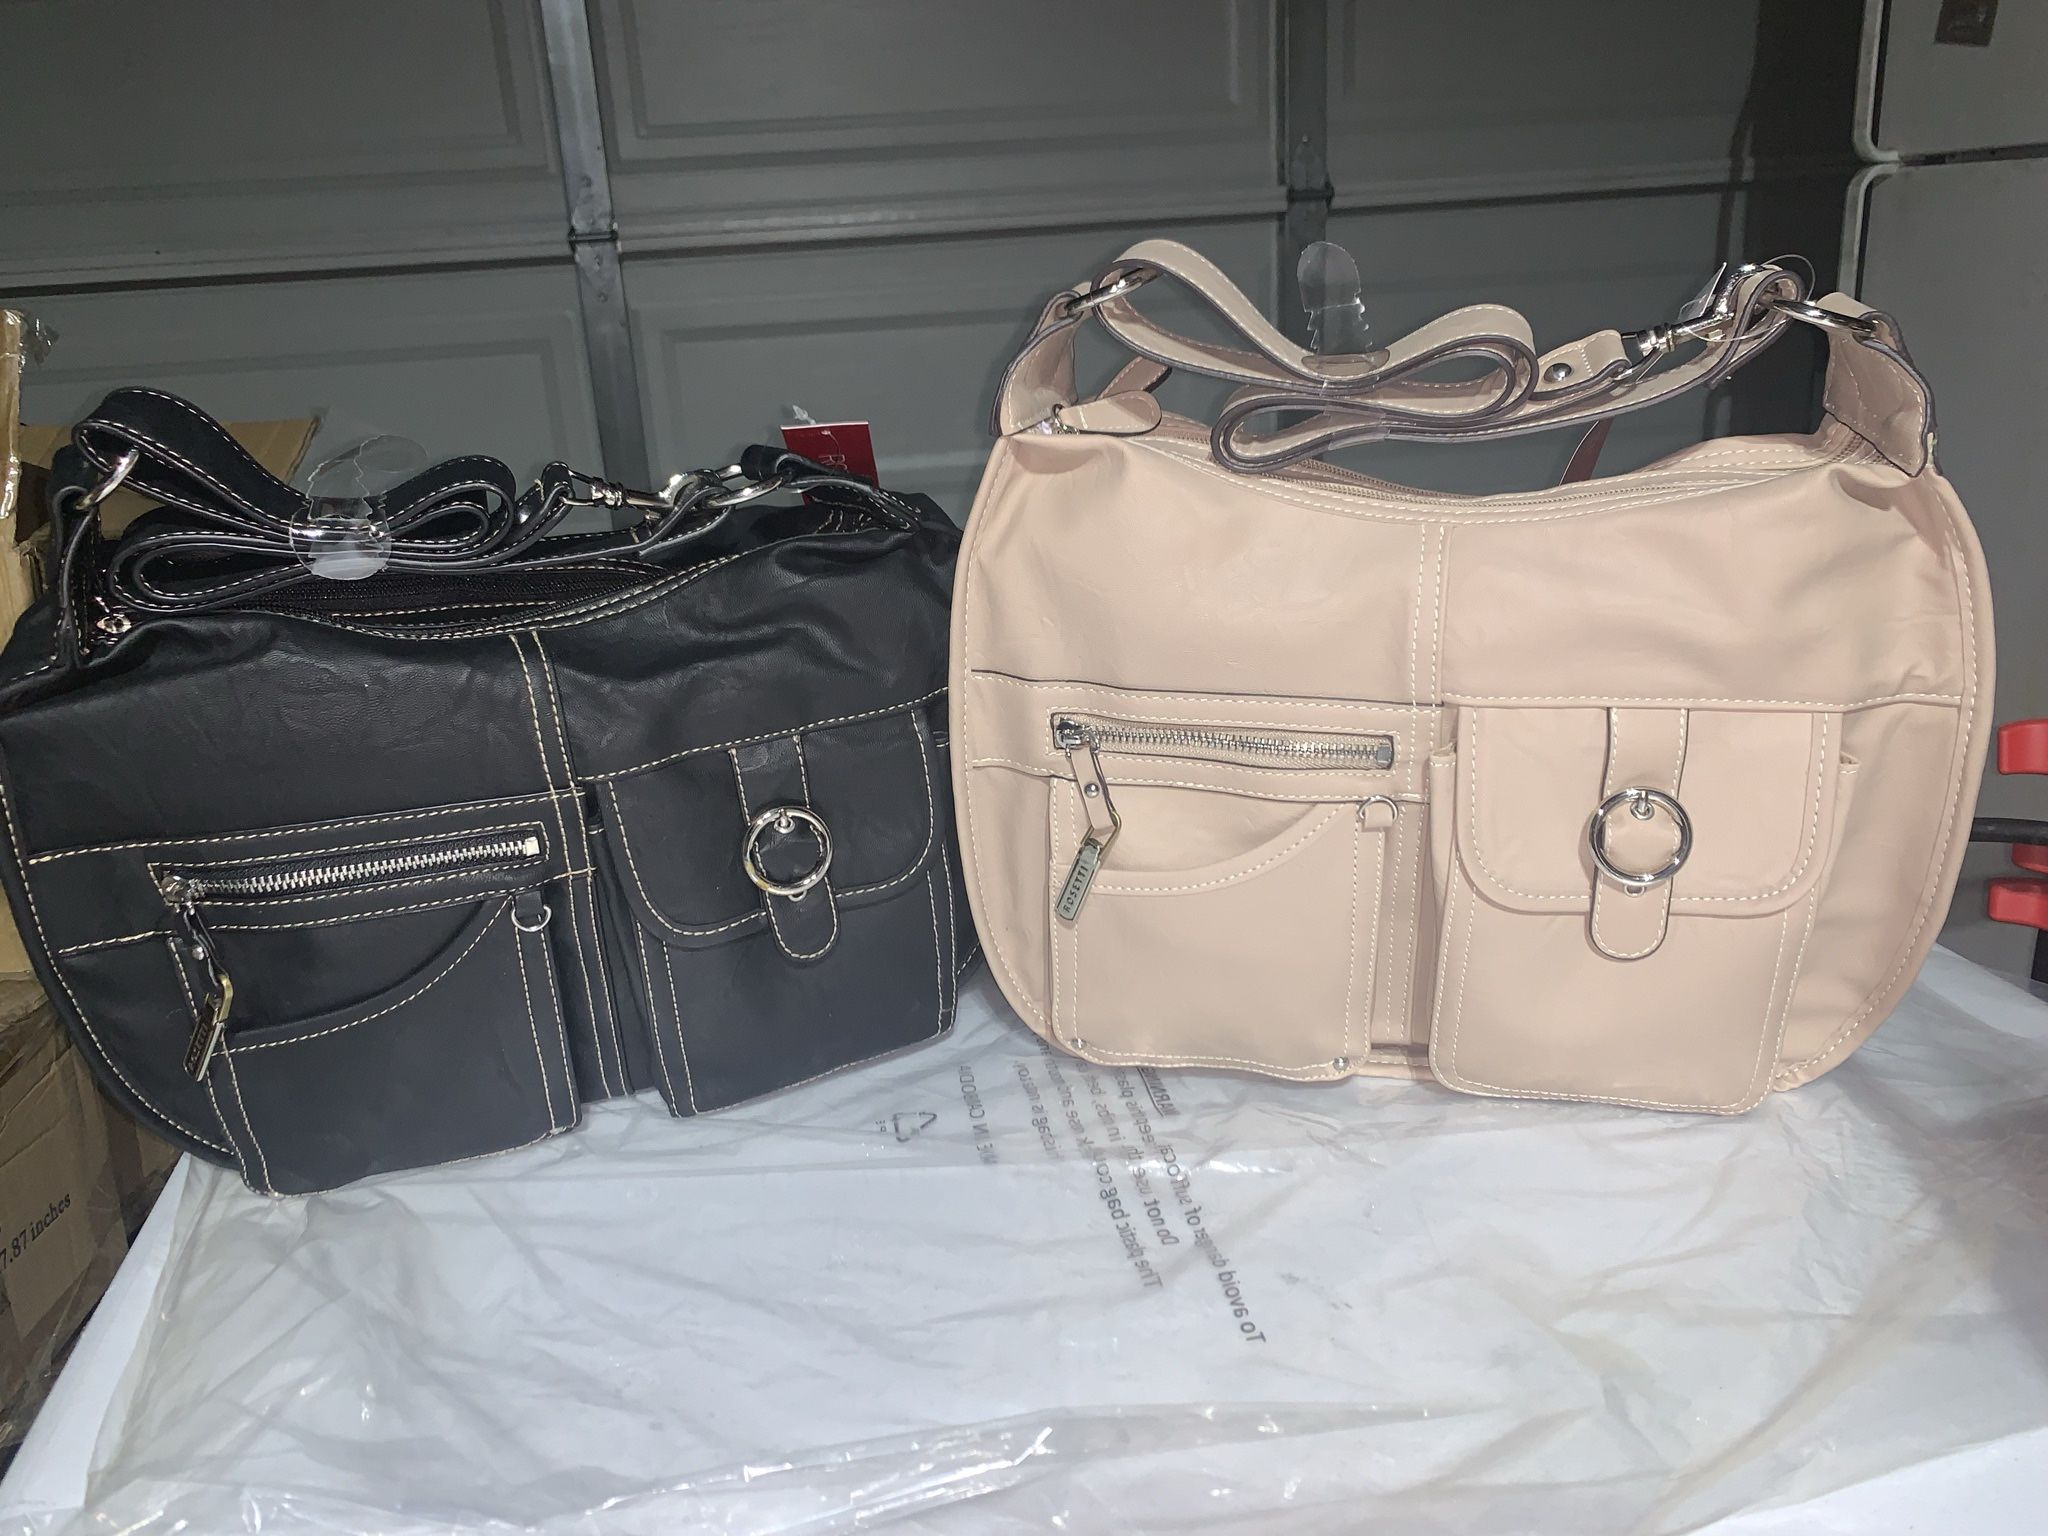 “New Hobo Bag $20 Each 